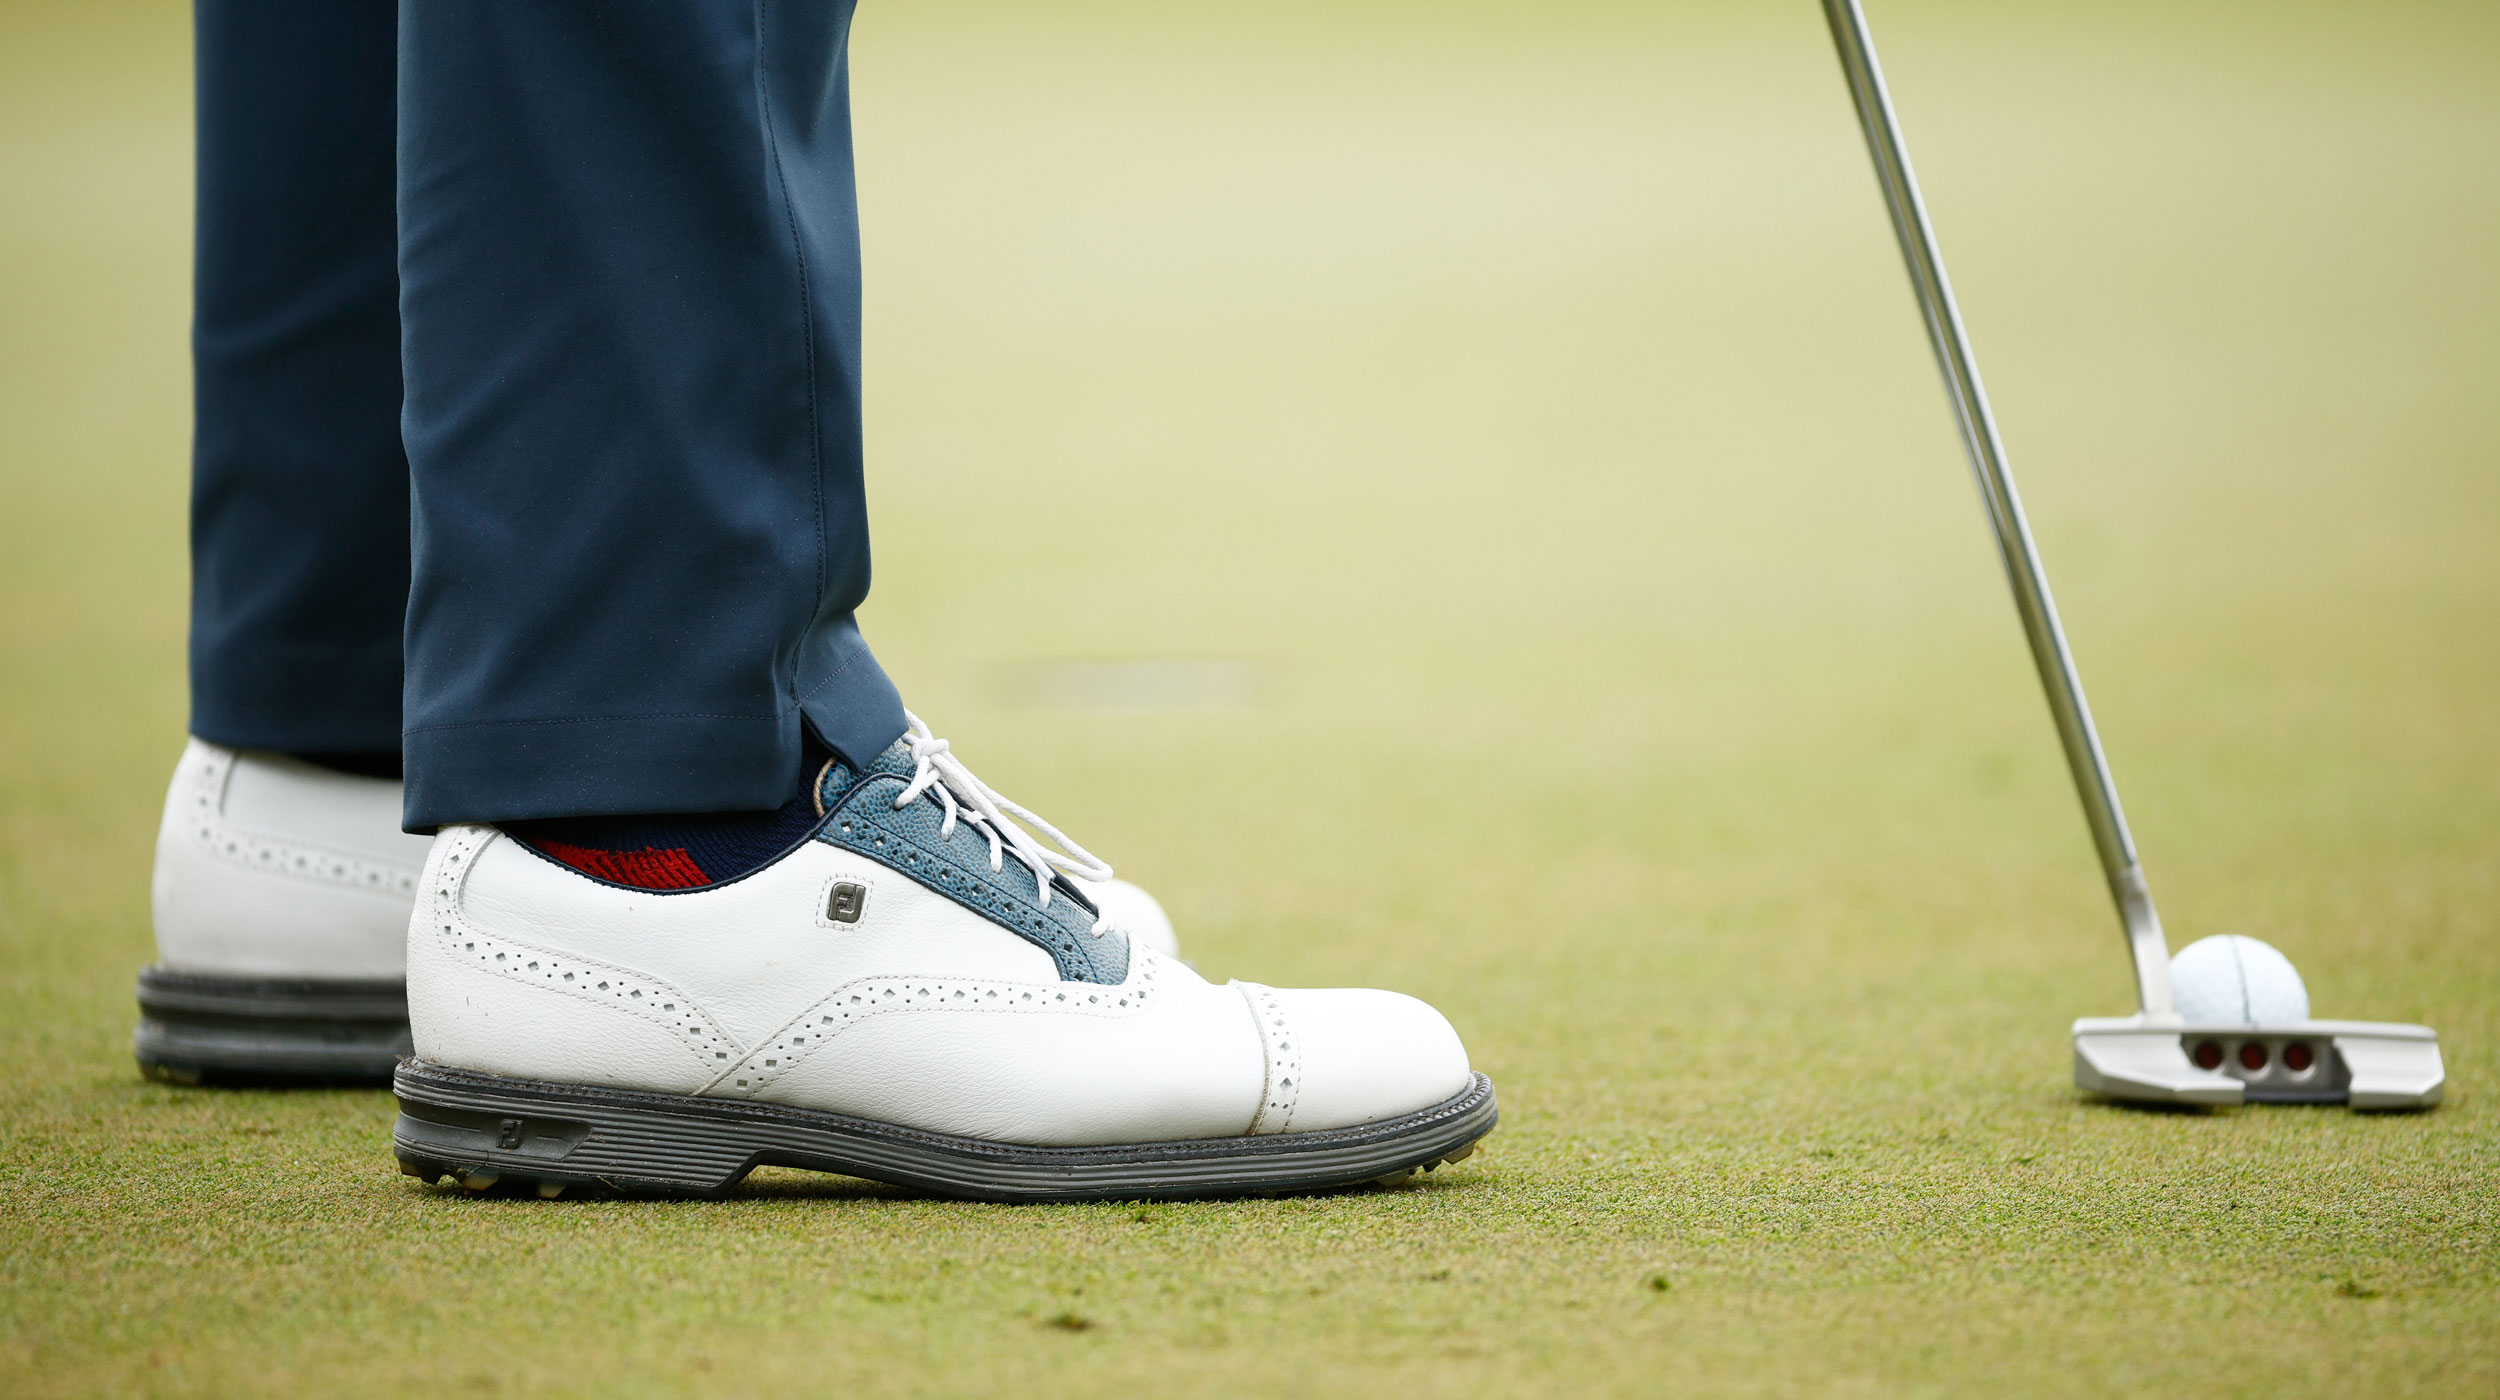 Zapatos Golf Hugo Boss | vlr.eng.br